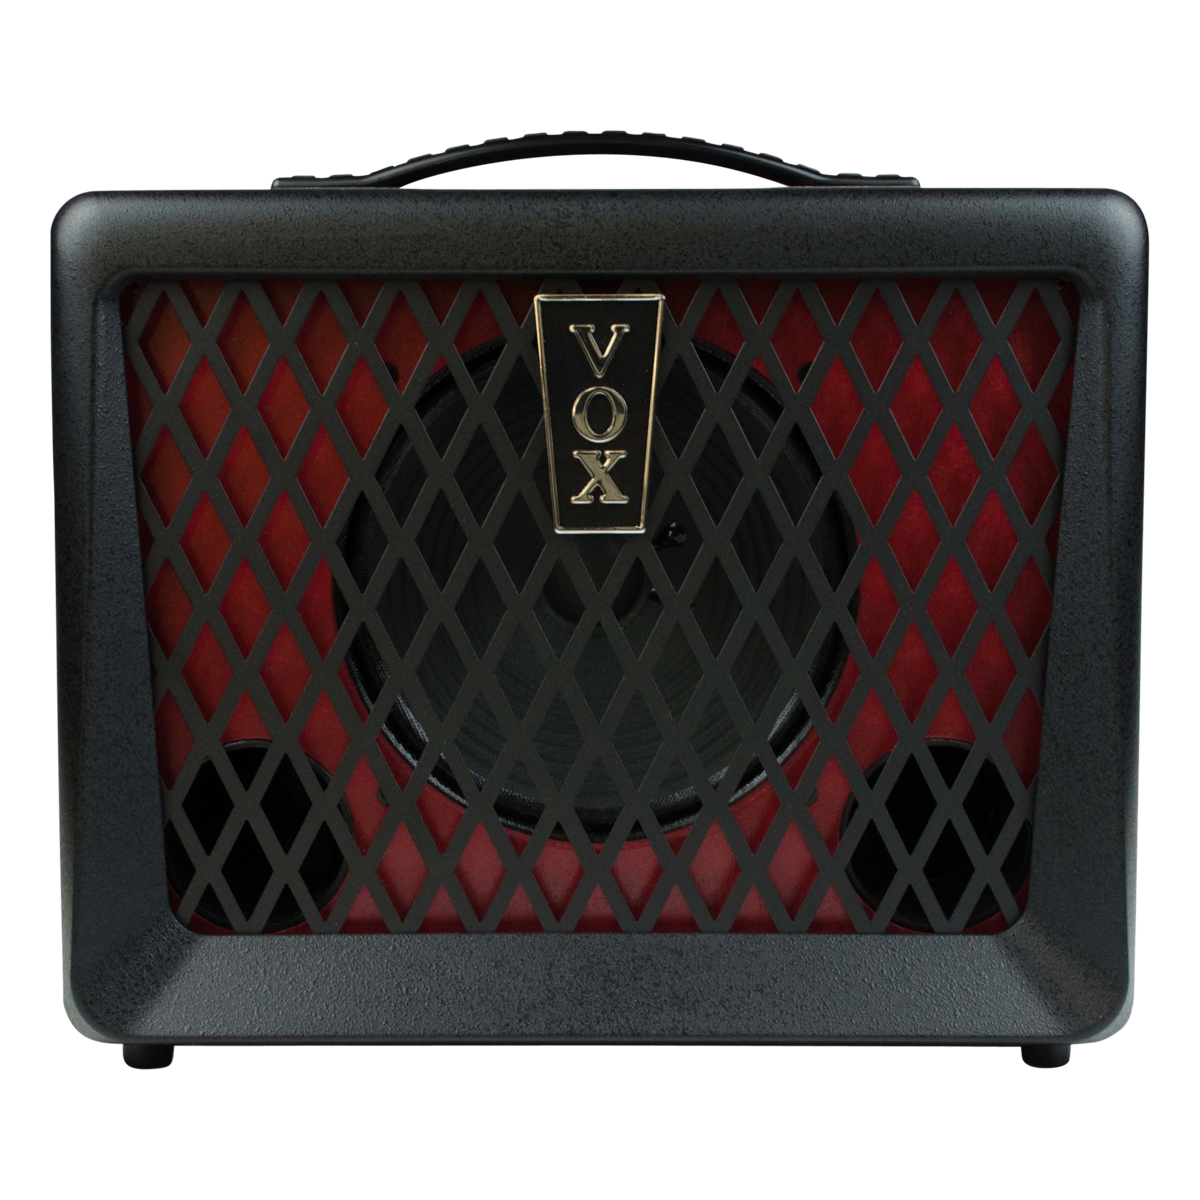 VX50 BA - Bass Amplifier Vox Amp Shop